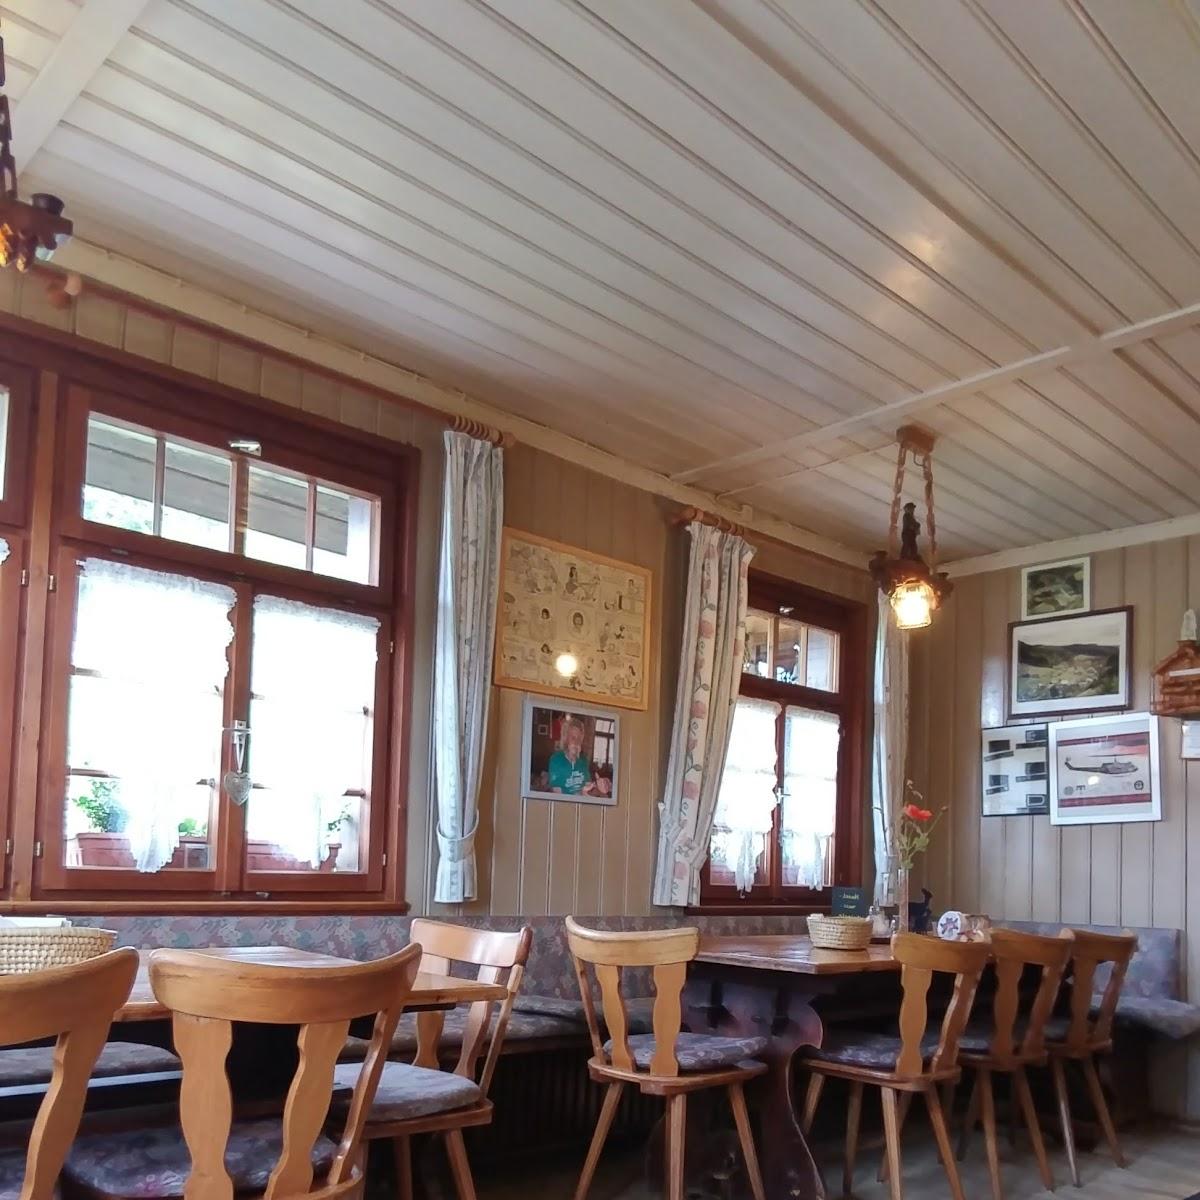 Restaurant "Menzenschwander Hütte" in Feldberg (Schwarzwald)